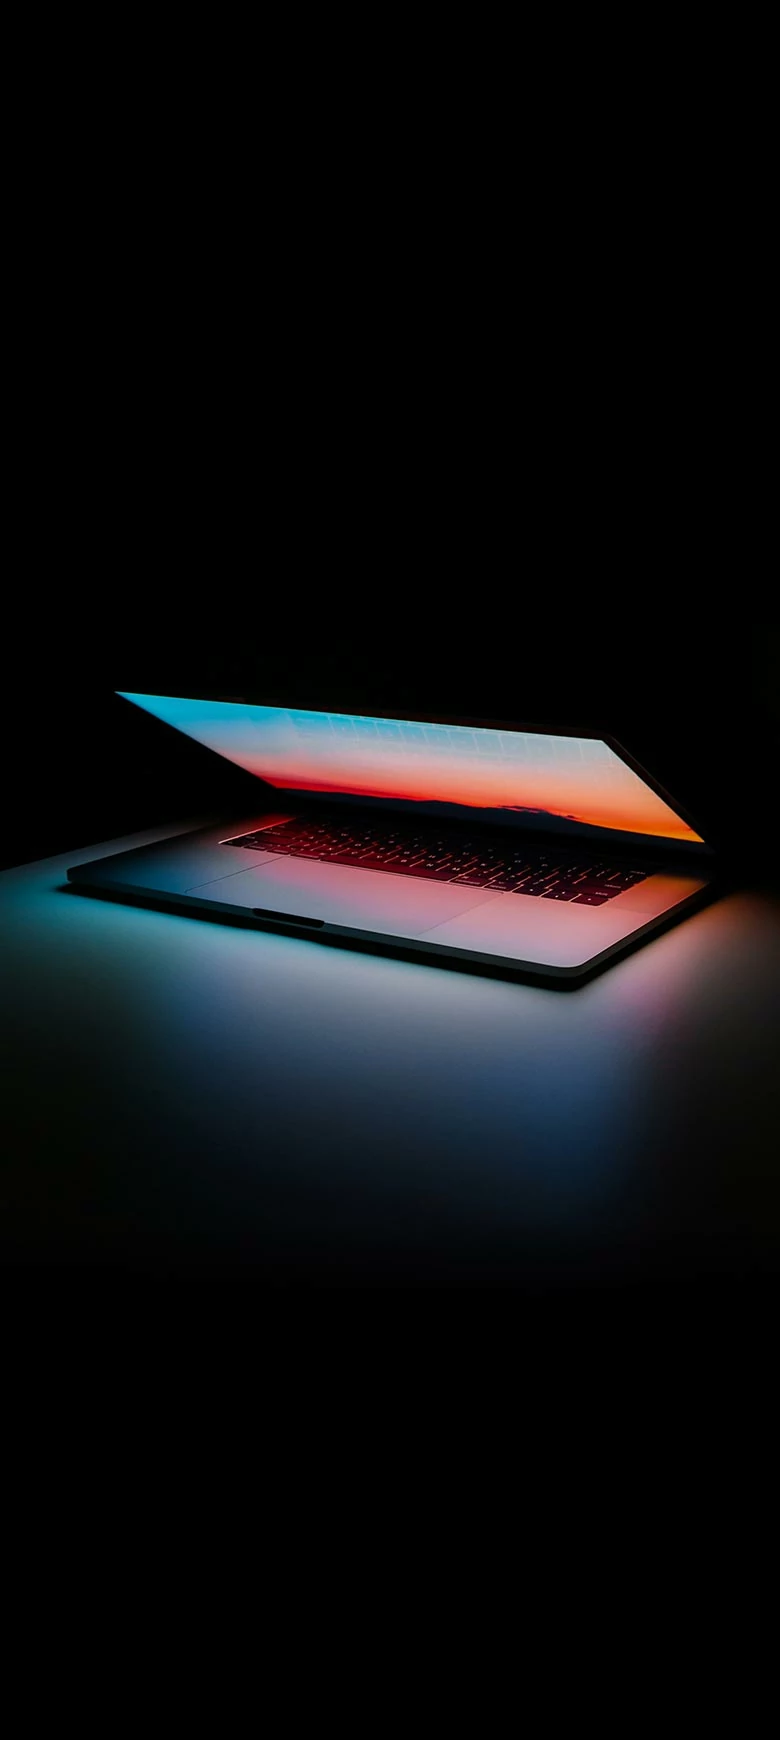 Ein Laptop vor dunklem Hintergrund. Das Display ist halb heruntergeklappt, dessen bunter Lichtschein die Szenerie beleuchtet. 